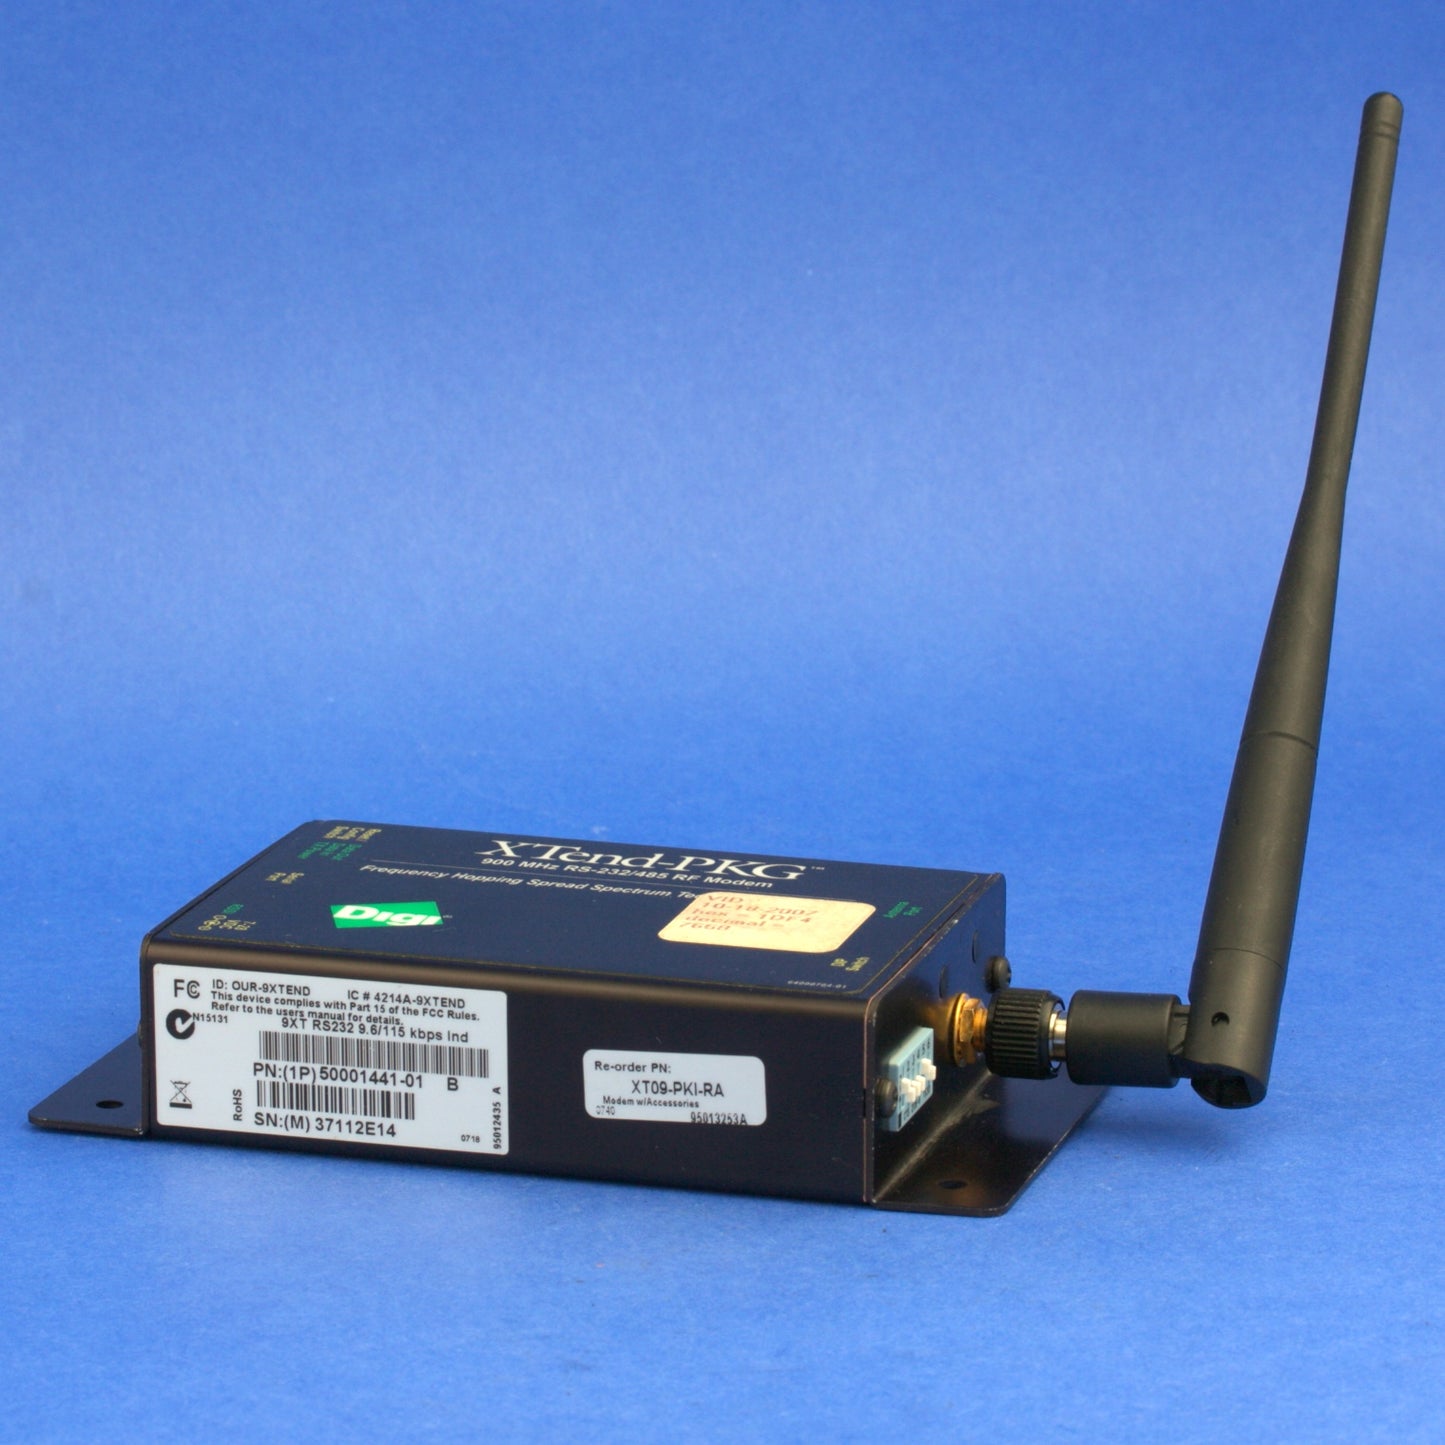 Digi Xtend-PKG RF Transceiver Modem 900MHz RS-232 RS-485